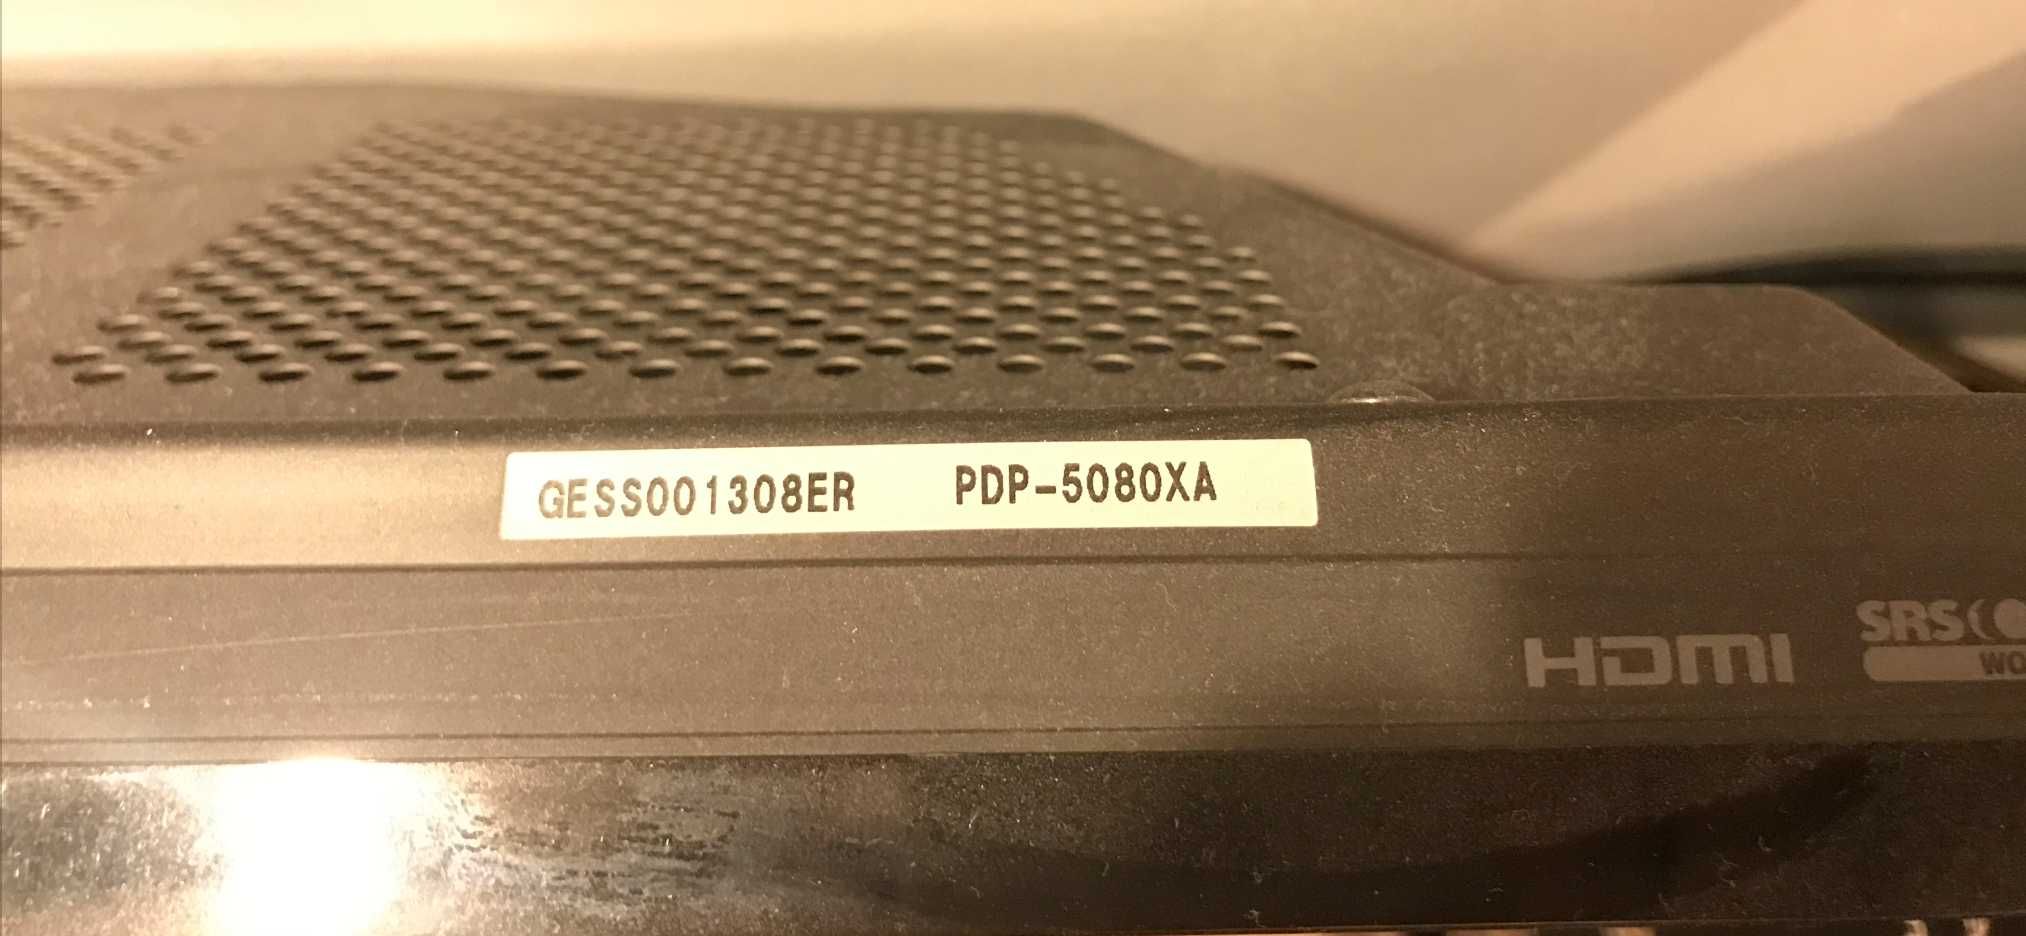 PDP-5080XA plazma 50"  telewizor